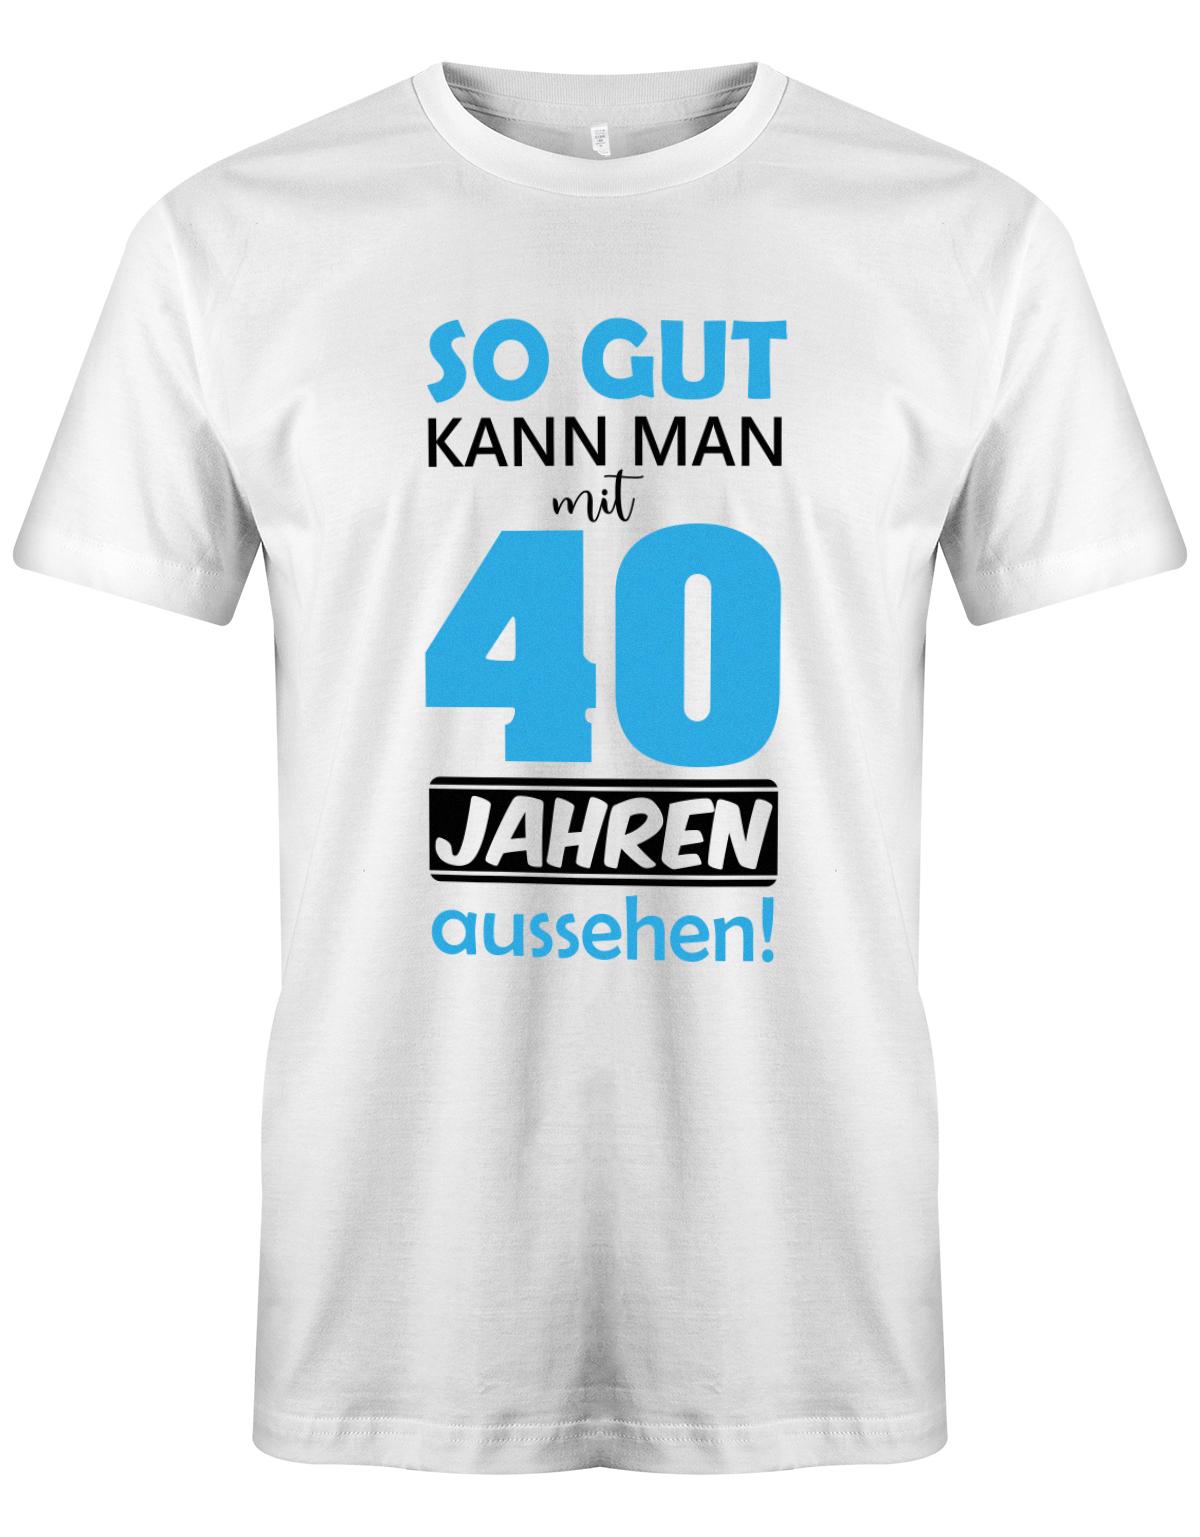 So gut kann man mit 40 Jahren aussehen - Special  - T-Shirt 40 Geburtstag Männer myShirtStore Weiss